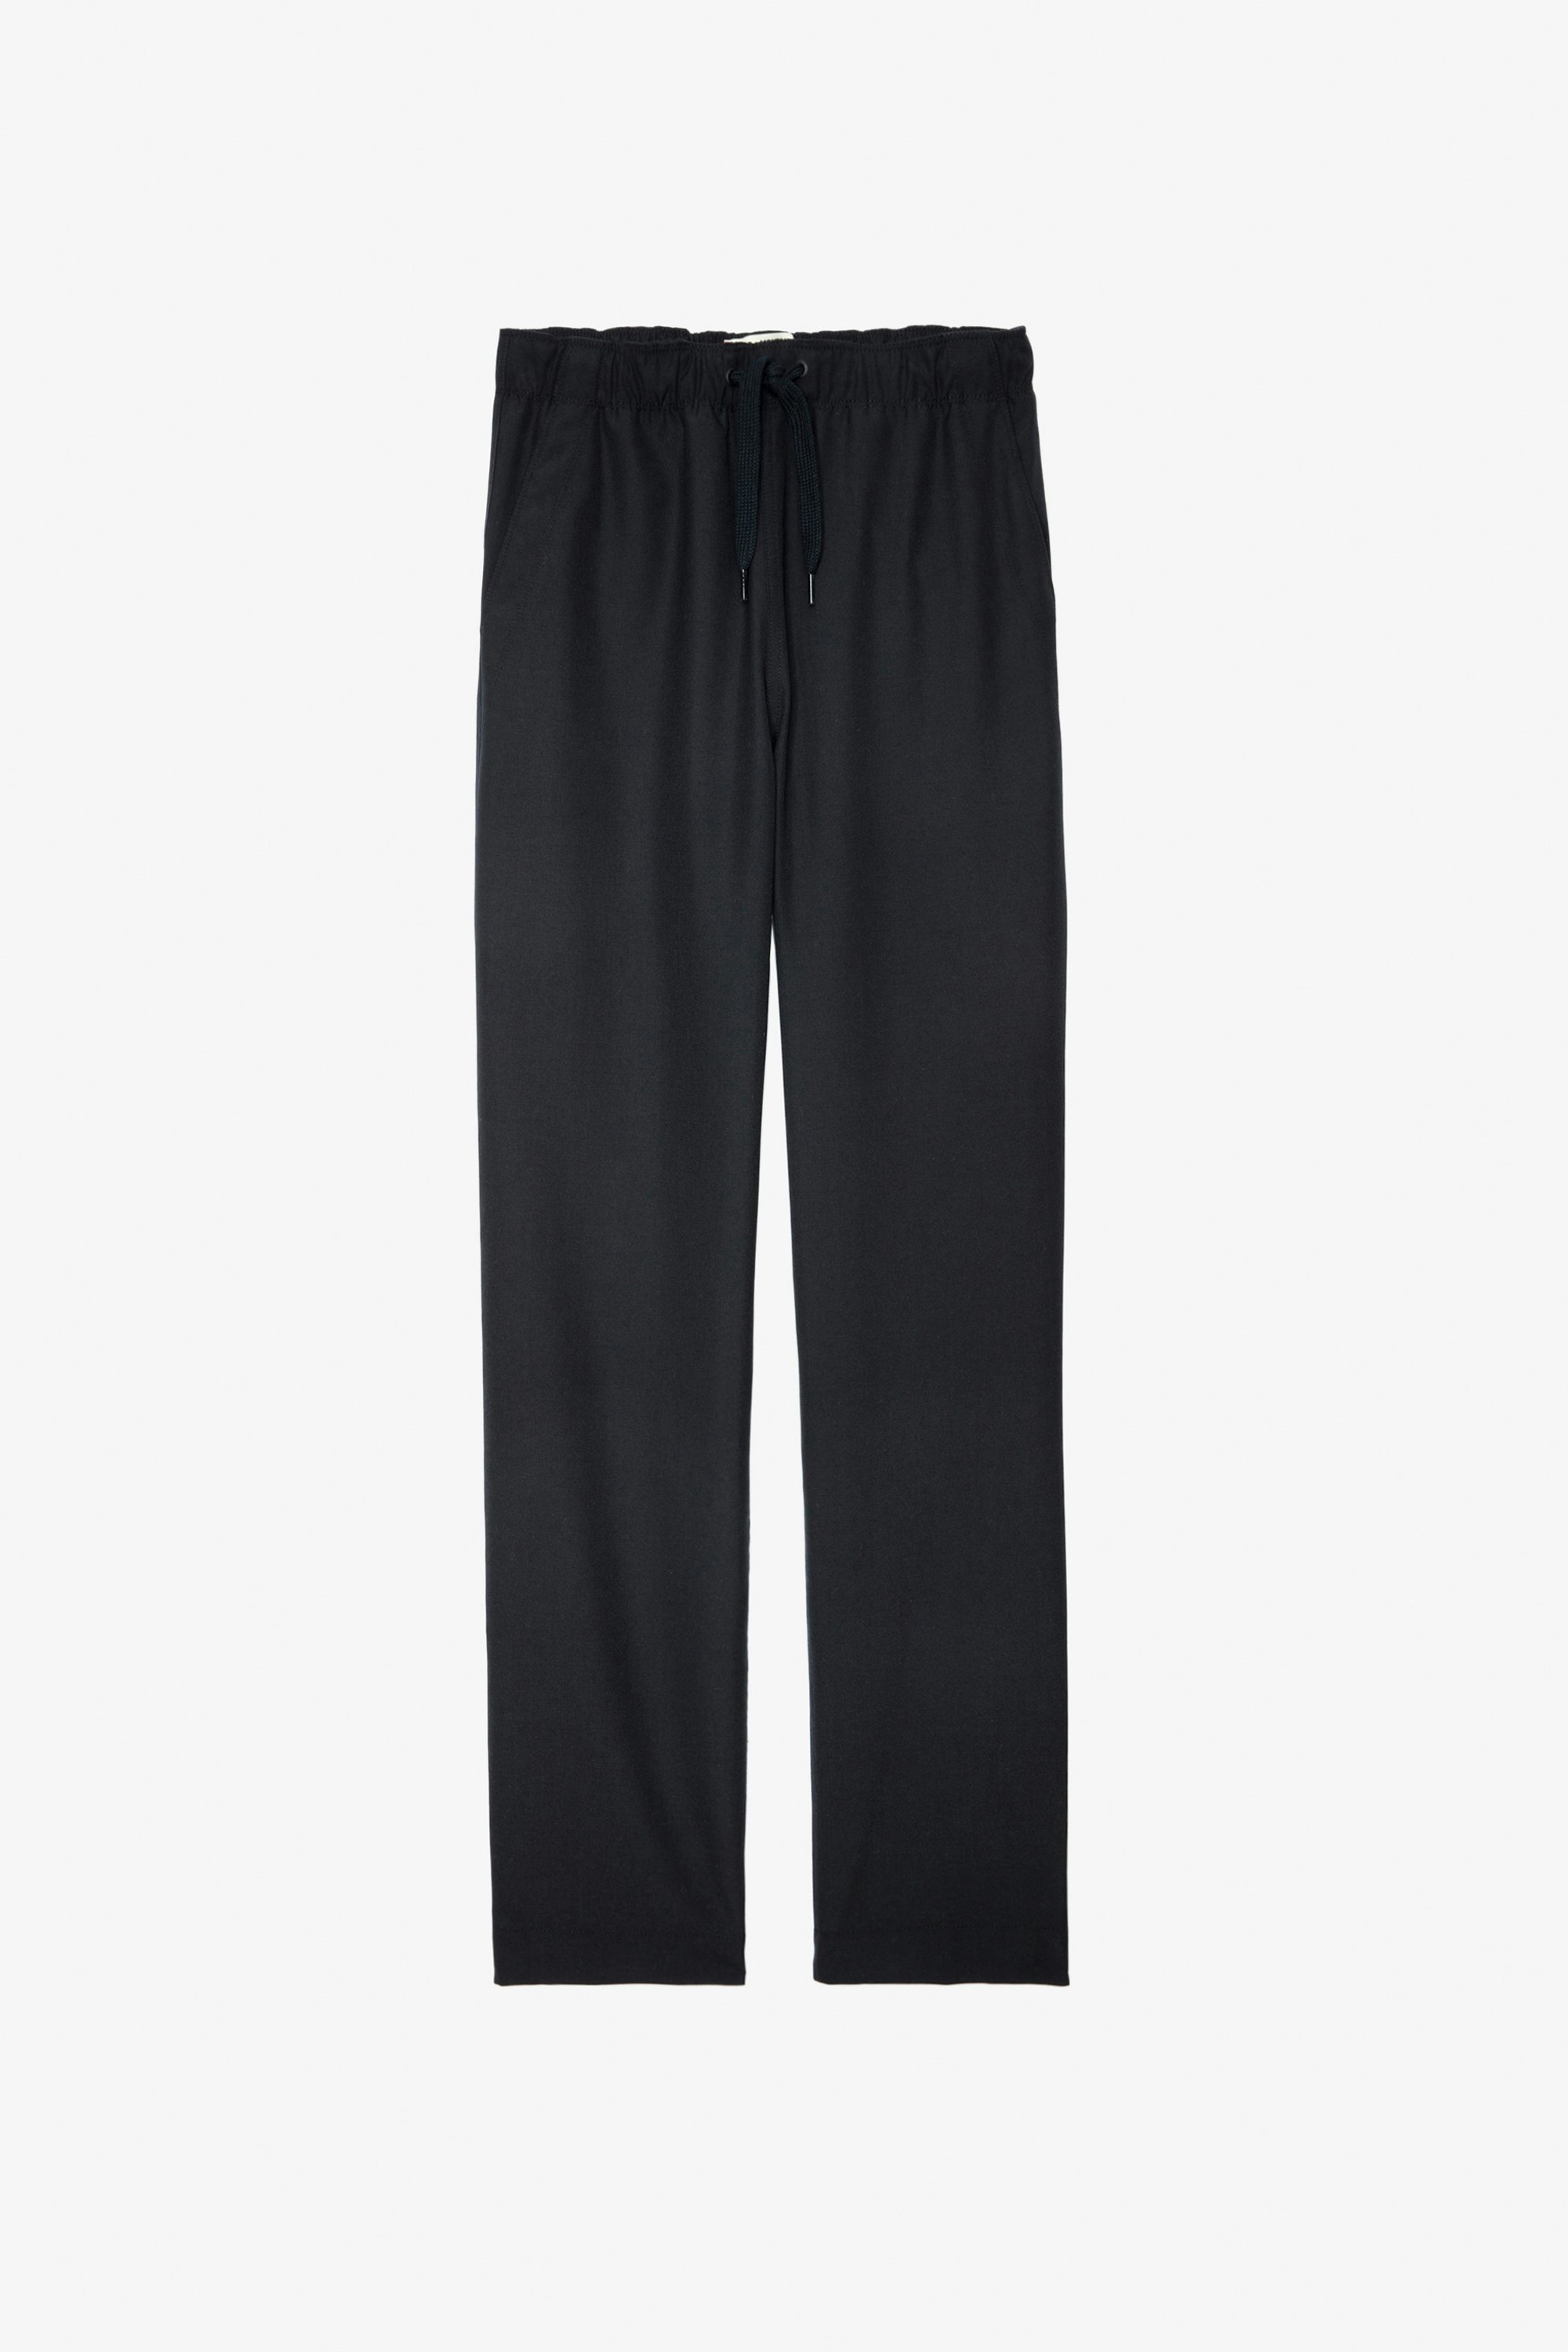 Pantalón Pixel - Pantalón unisex de lana en color negro con insignia del estudio en la espalda.